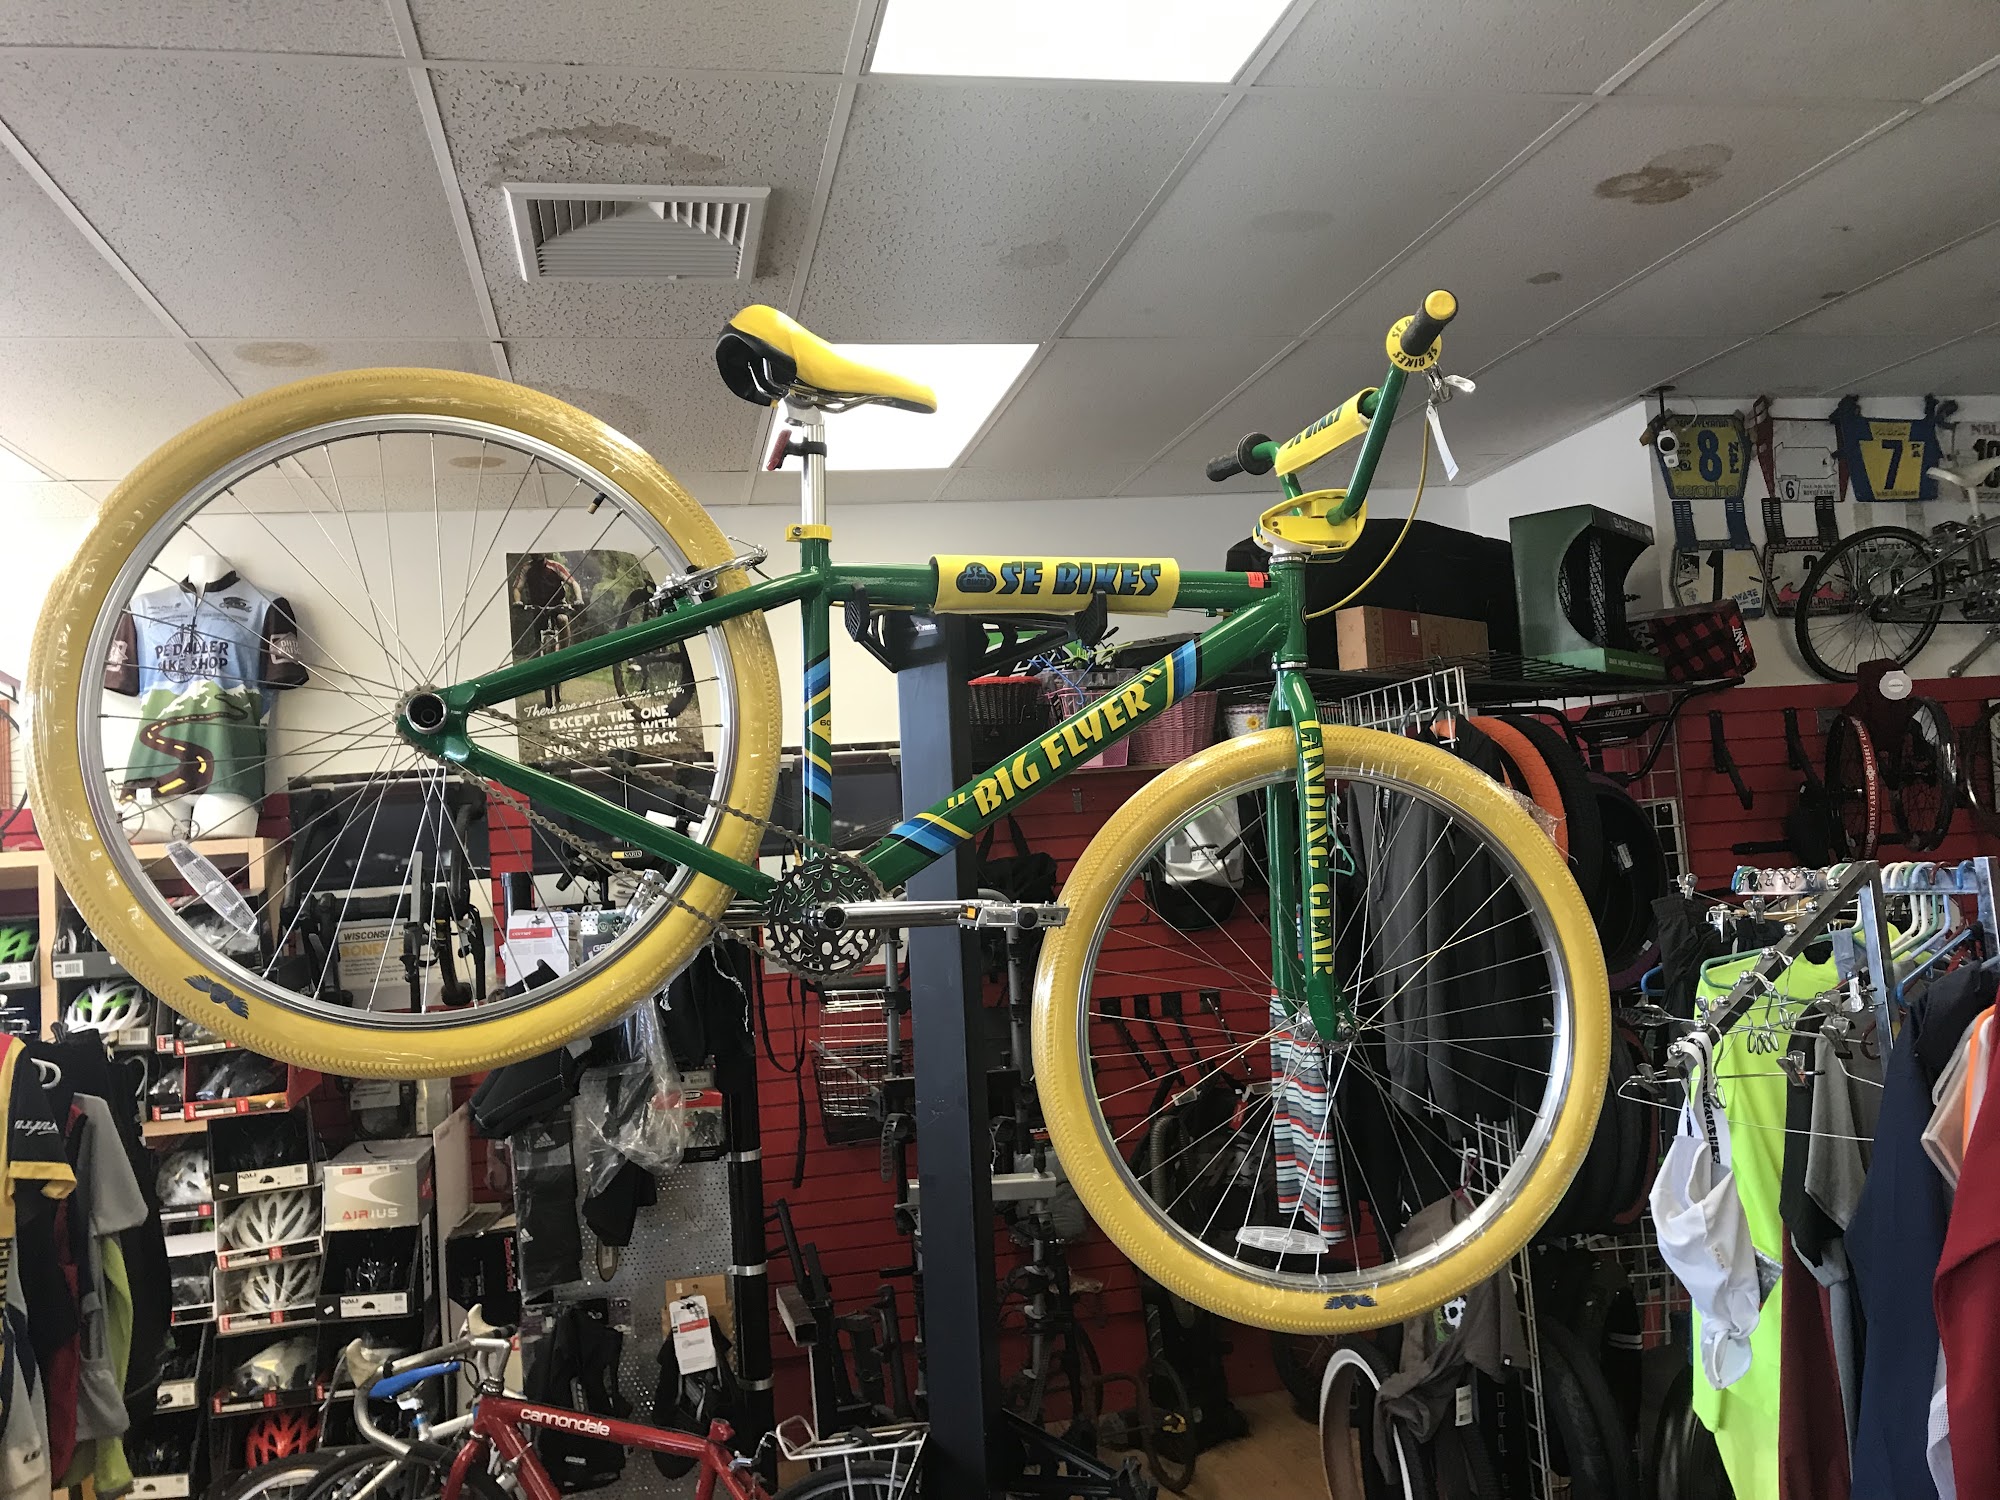 Pedaller Bike Shop